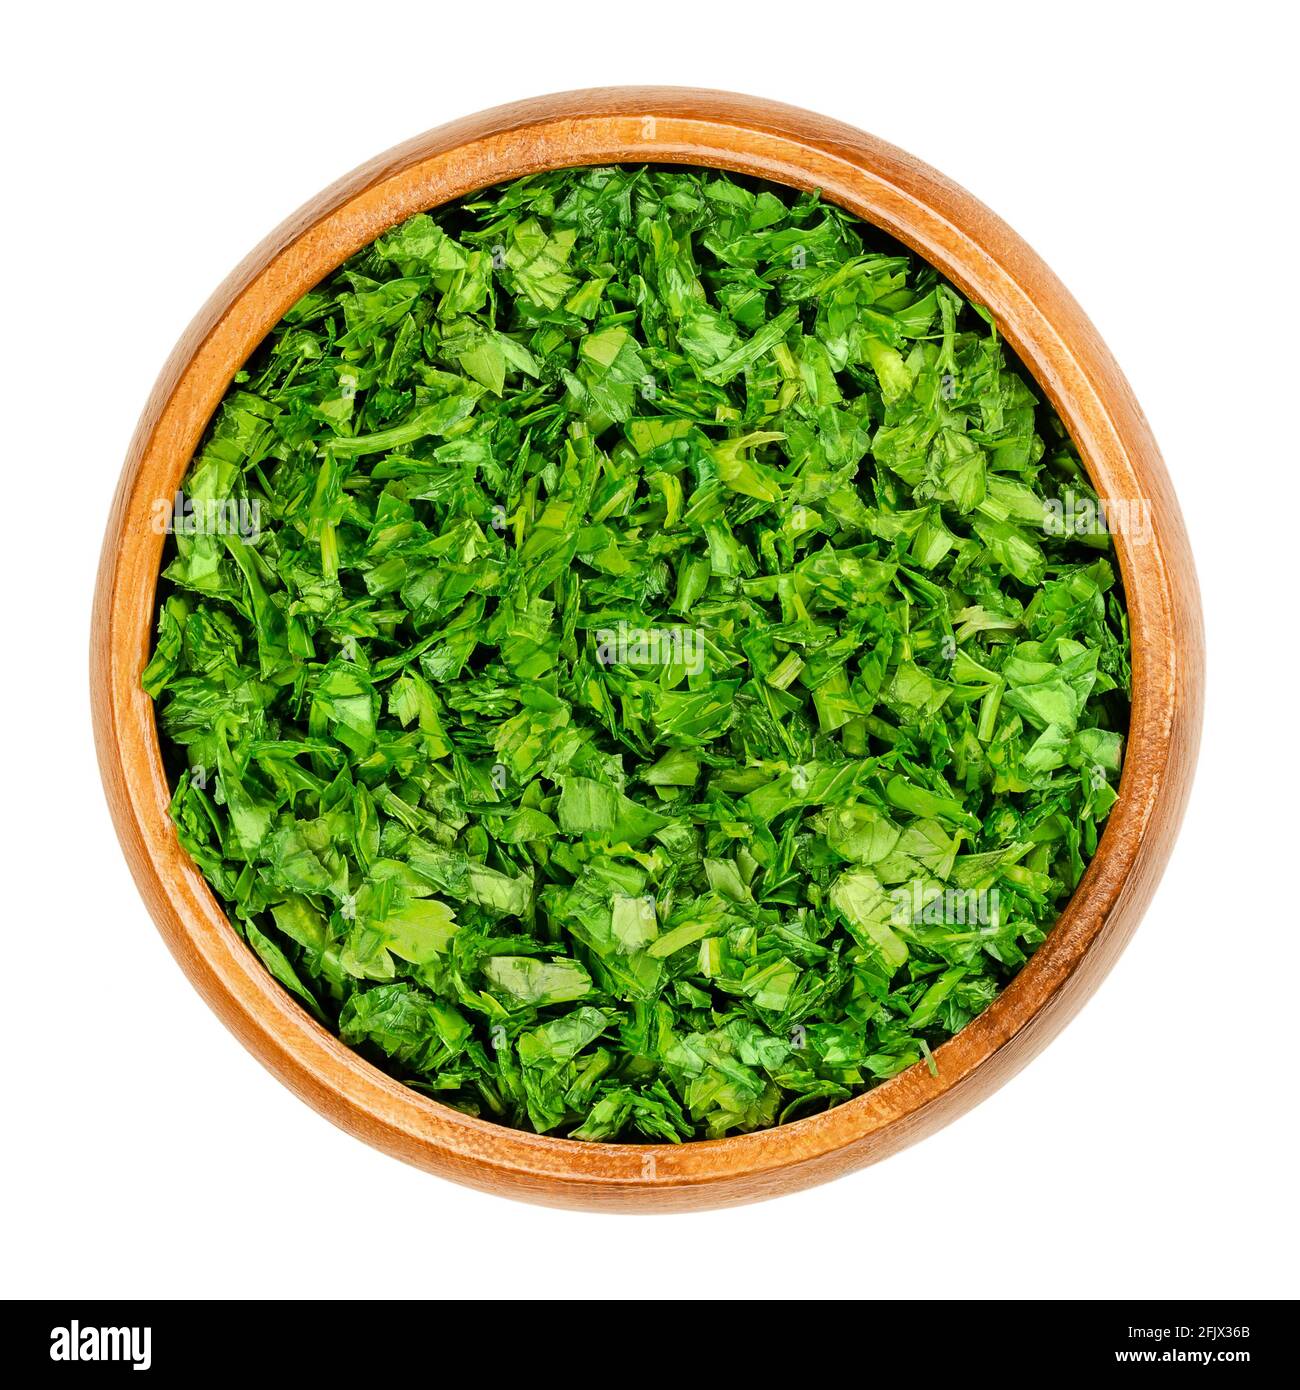 Tritato prezzemolo, in una ciotola di legno. Prezzemolo fresco e piatto, foglie verdi di Petroselinum croccante, utilizzato come erba, spezie e verdura. Primo piano. Foto Stock